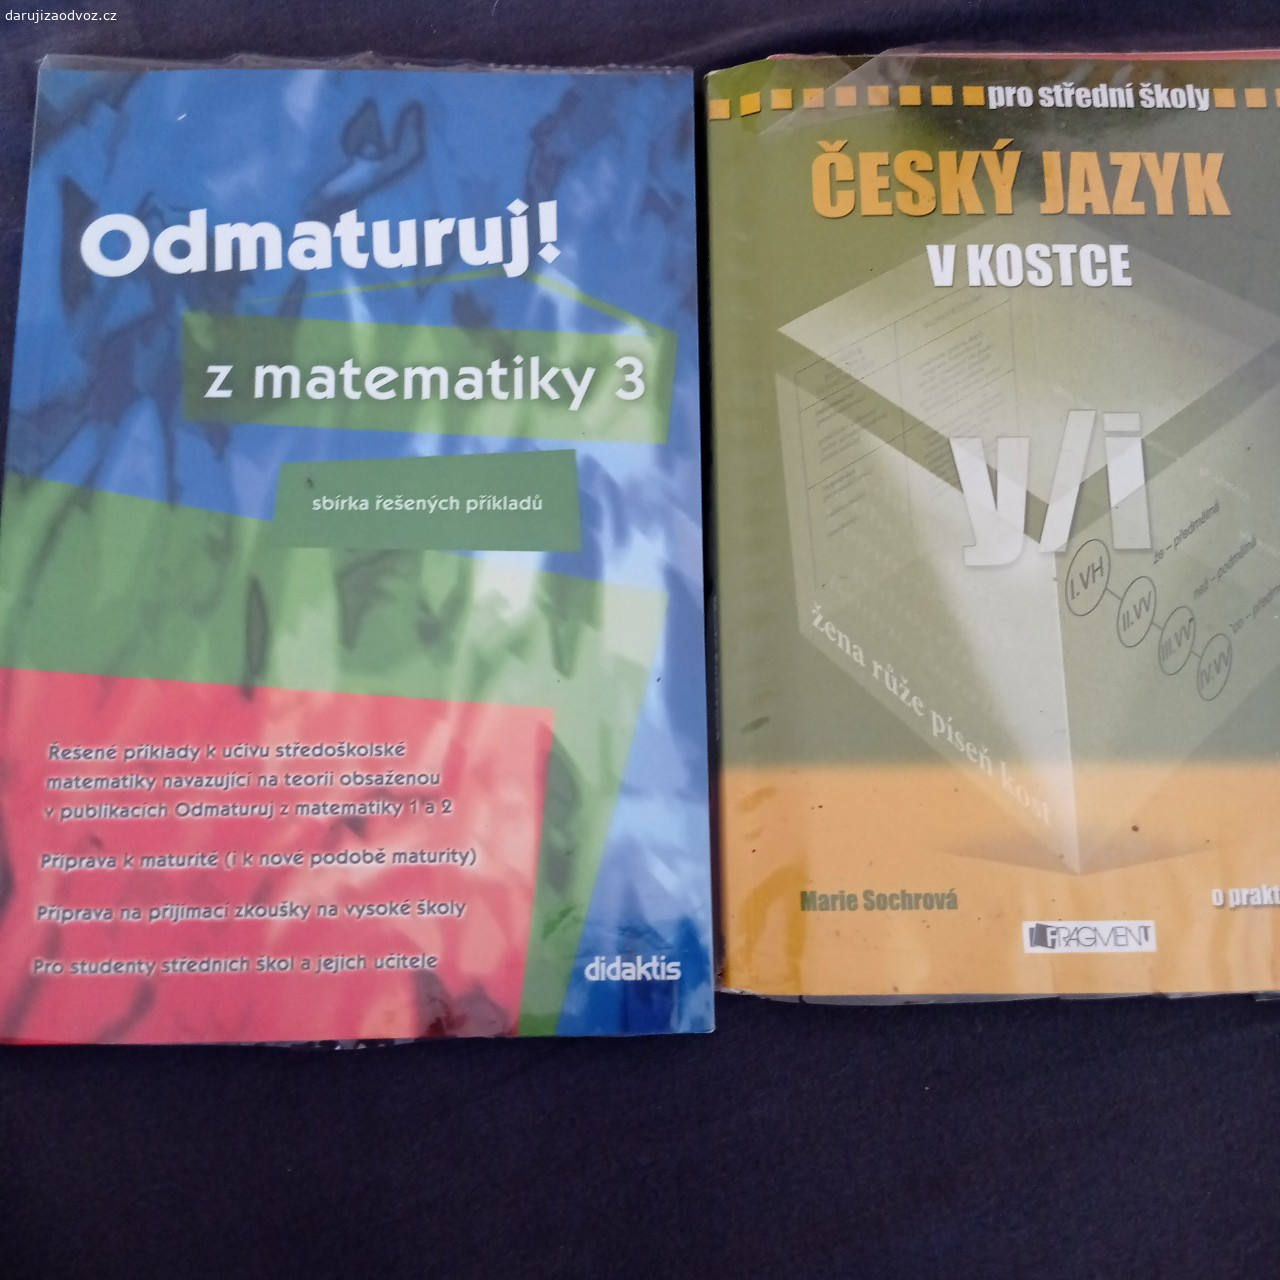 Daruji učebnice k maturitě. Daruji knihy Odmaturuj z matematiky a Český jazyk v kostce.